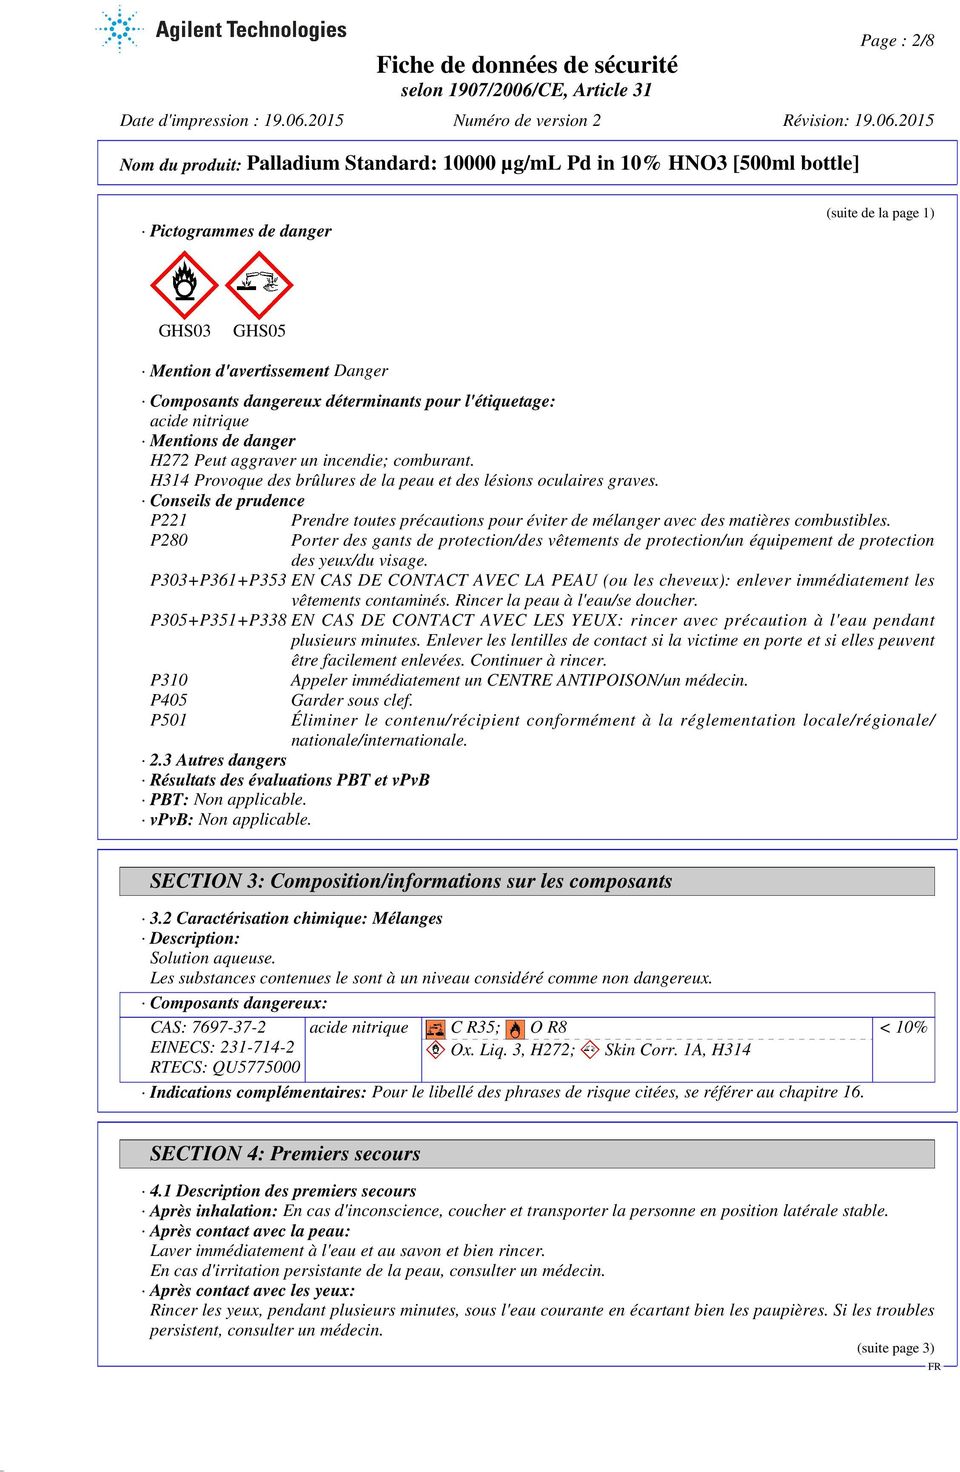 Conseils de prudence P221 P280 Prendre toutes précautions pour éviter de mélanger avec des matières combustibles.